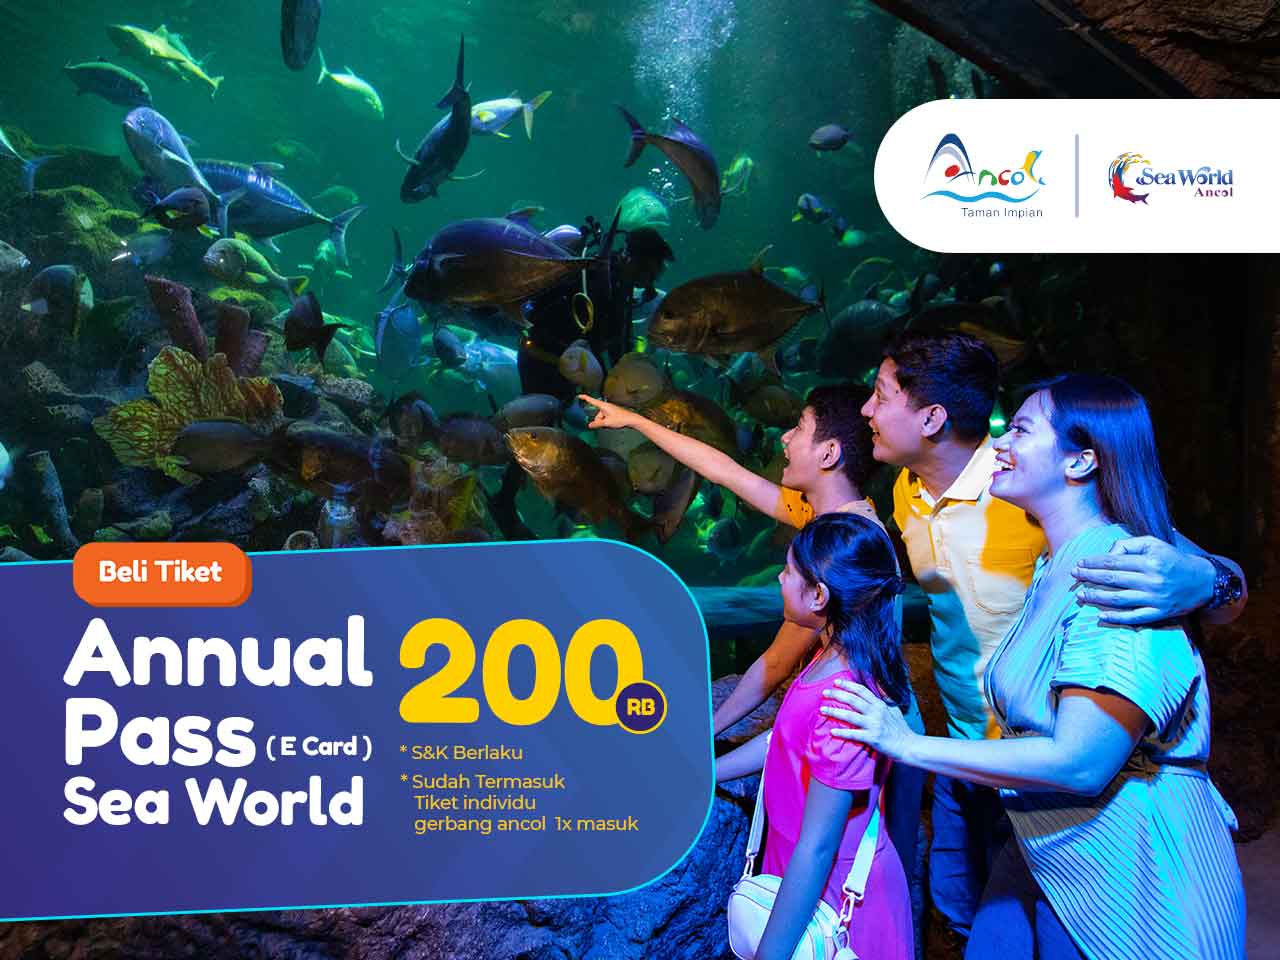 Gratis Rekreasi Setahun ke Sea World Ancol Cuma 200rb Dengan Annual Pass